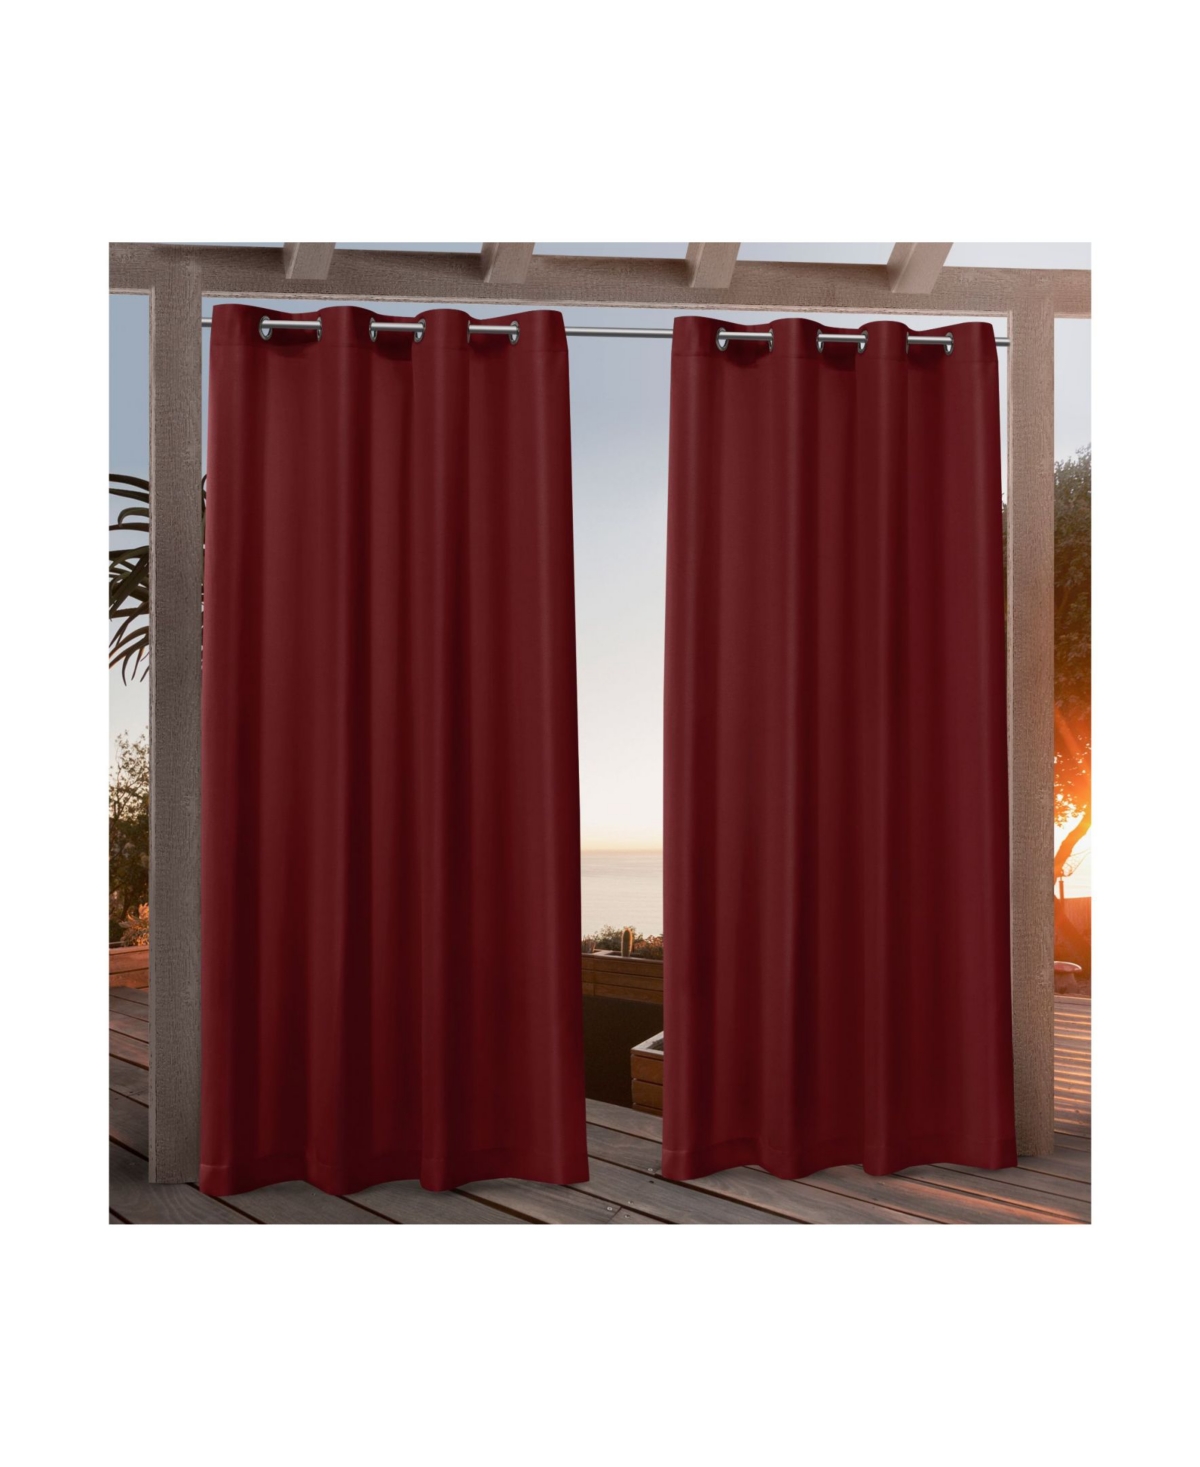 Canvas Indoor/Outdoor Grommet Top 54" X 108" Curtain Panel Pair - Pink